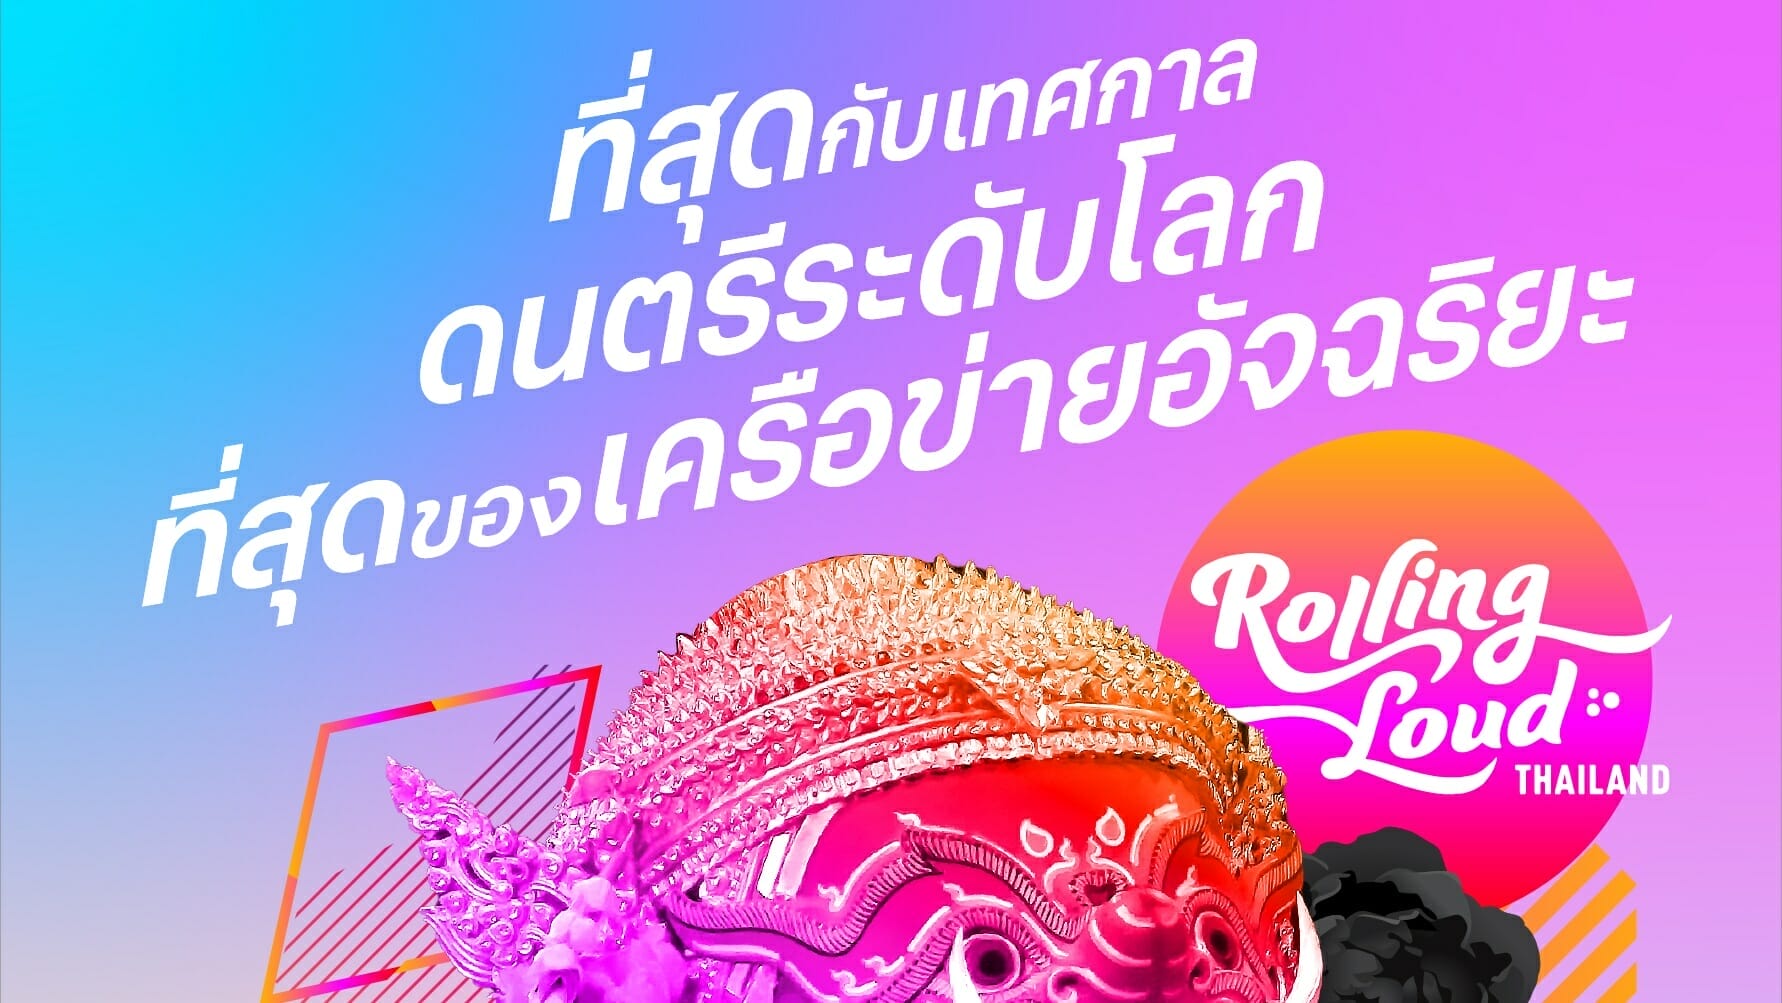 ทรูและดีแทคสร้างปรากฏการณ์ฮิปฮอประดับโลก “Rolling Loud Thailand 2023” พร้อมรับฟรี! บัตรเข้างาน 3 วัน